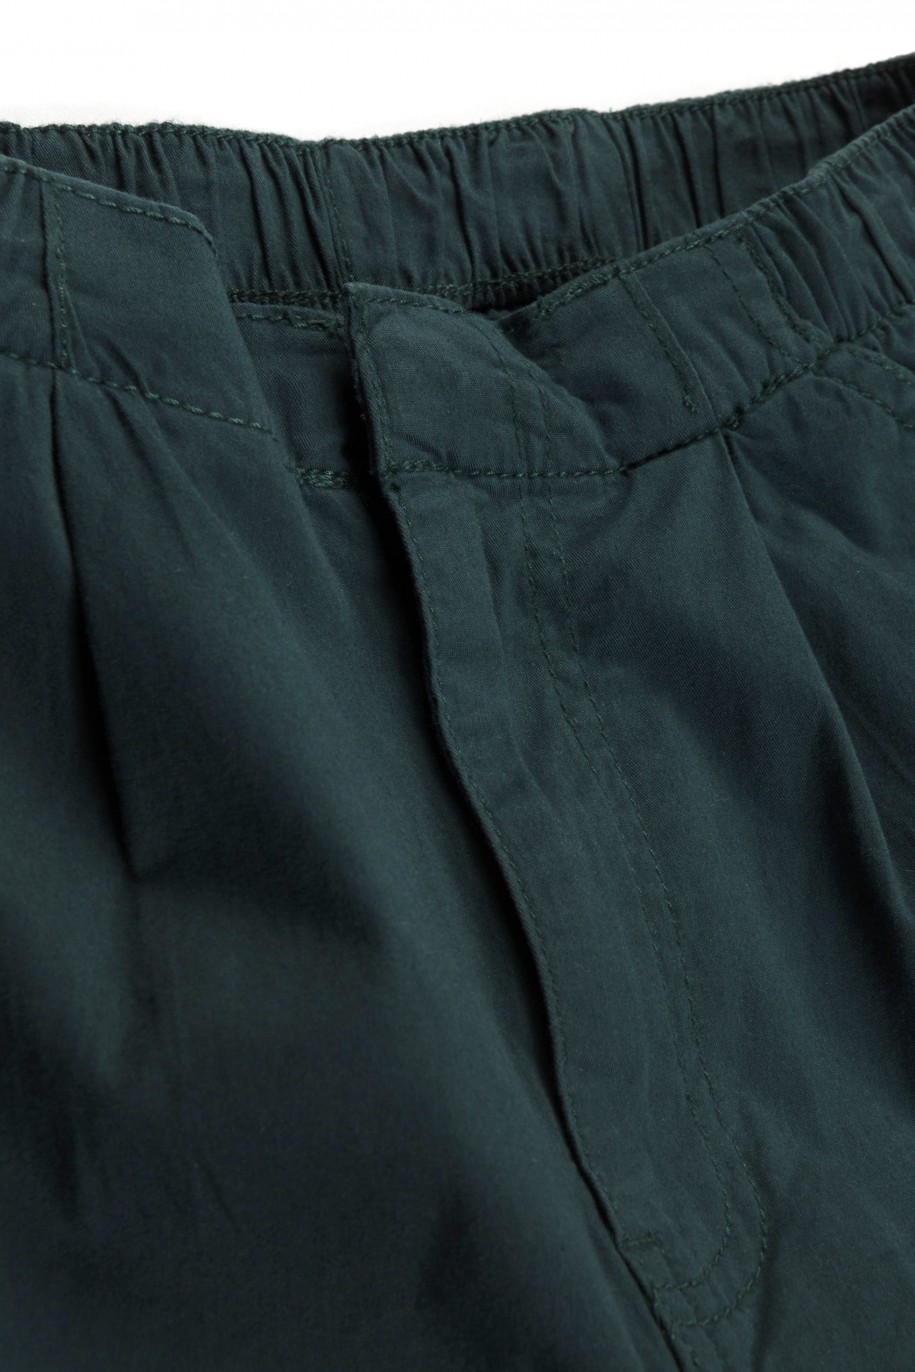 Zielone spodnie typu parachute z zaszewkami na nogawkach - 46311